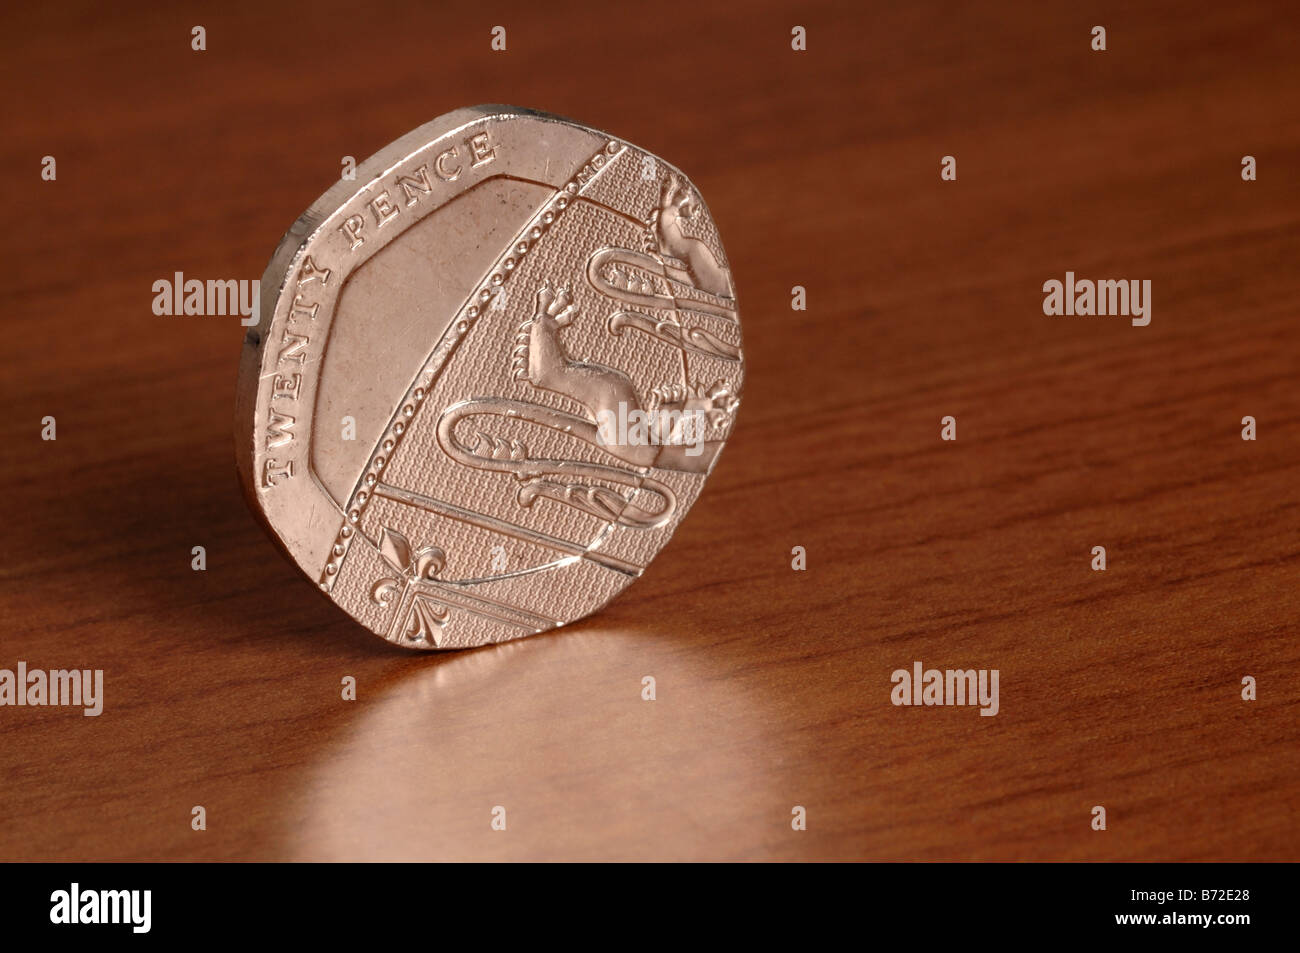 moneta da 20 pence Foto Stock